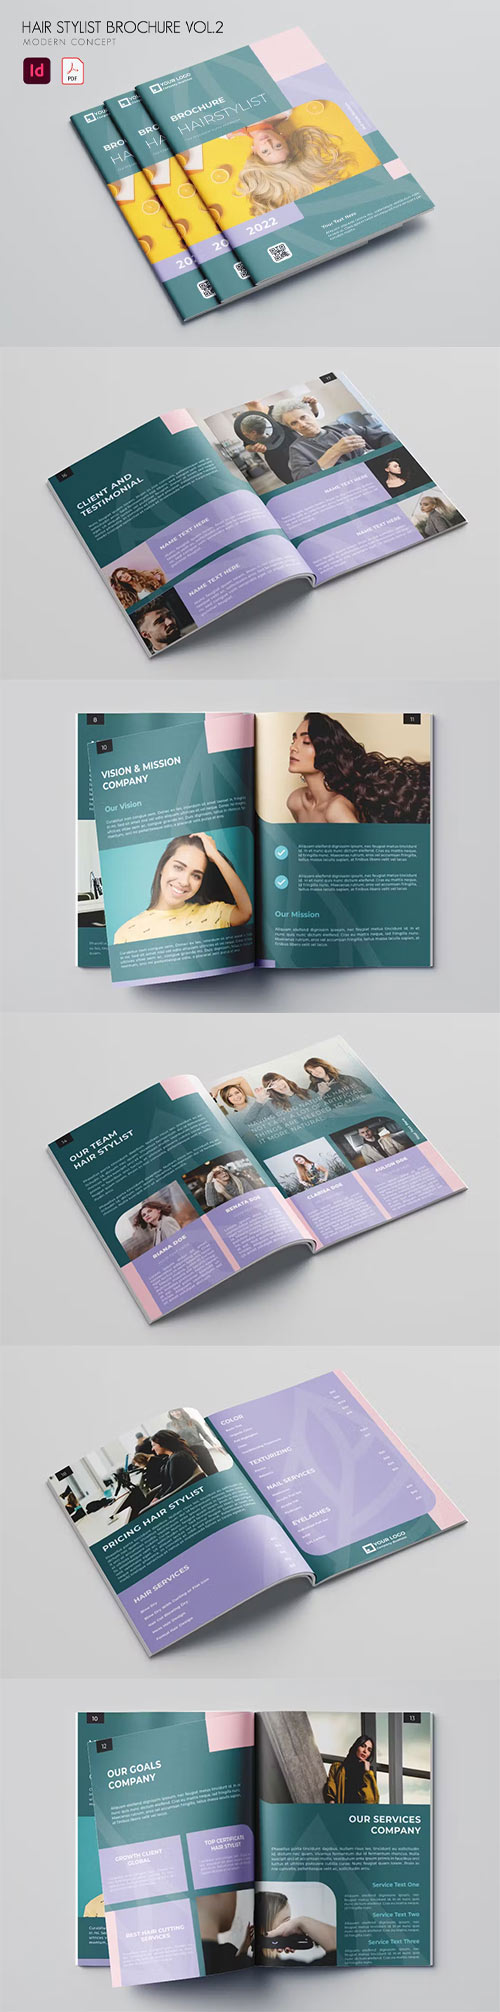 Hair Stylist Brochure Vol.2 7M9U8YJ